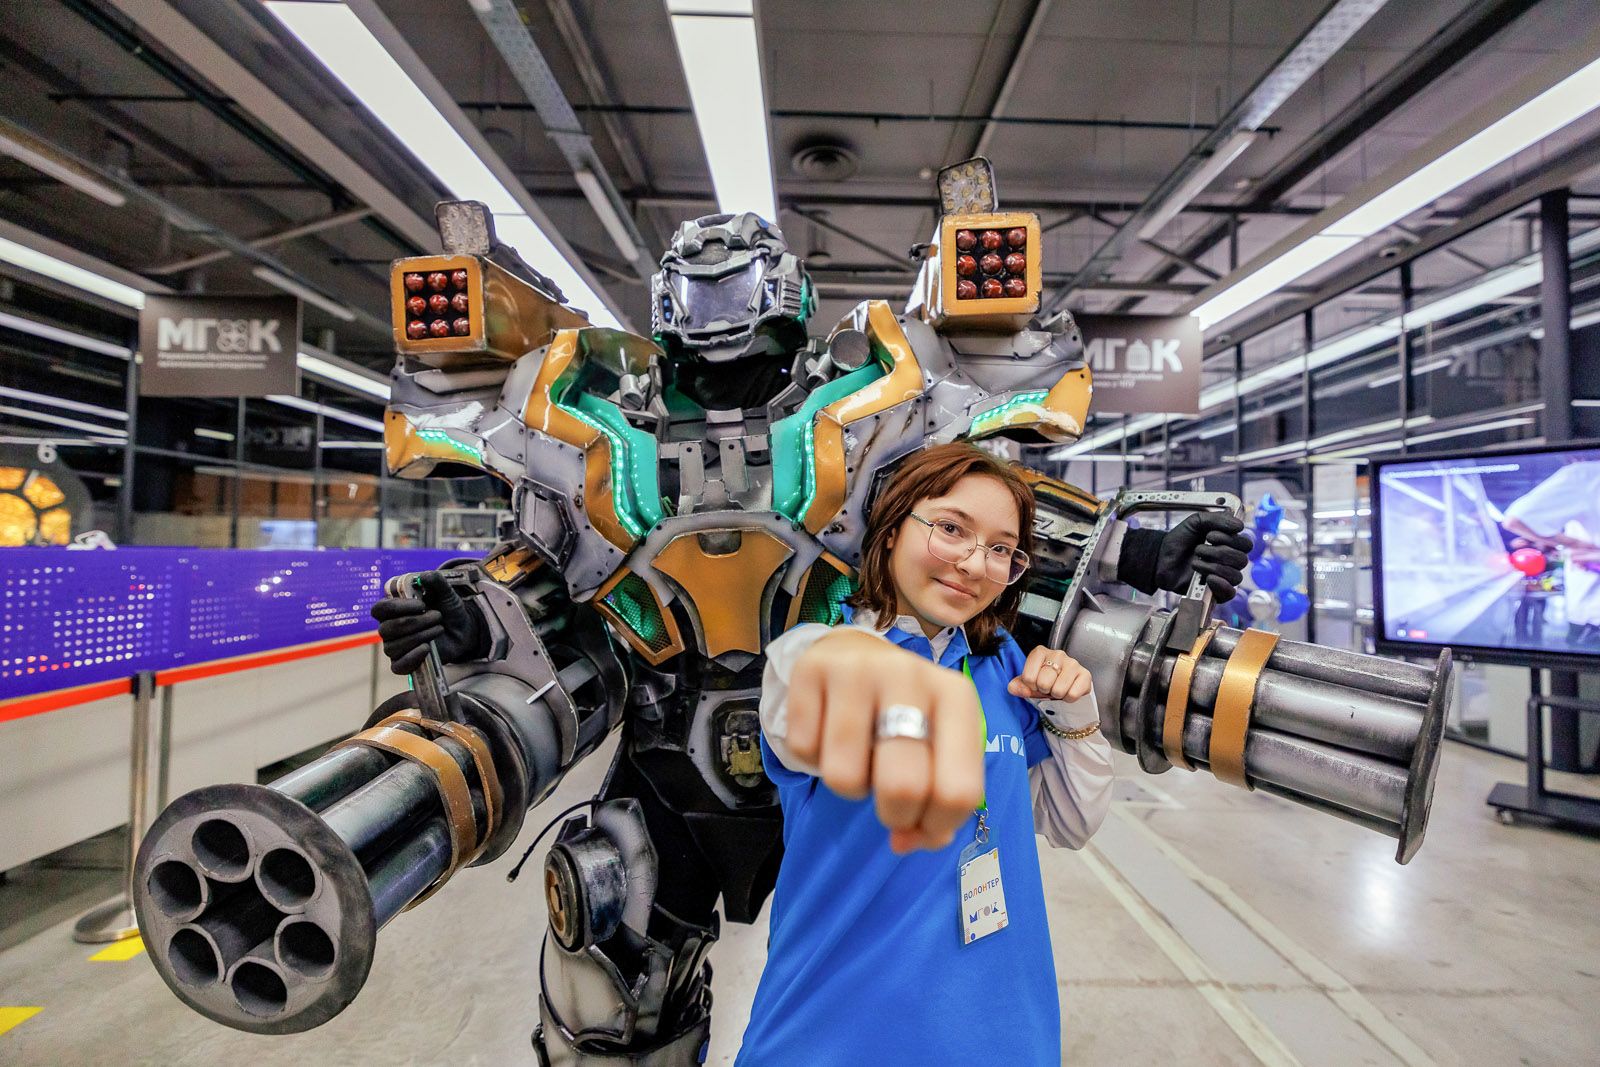 Битва роботов и иммерсивное шоу: в Москве пройдет фестиваль колледжей, фото